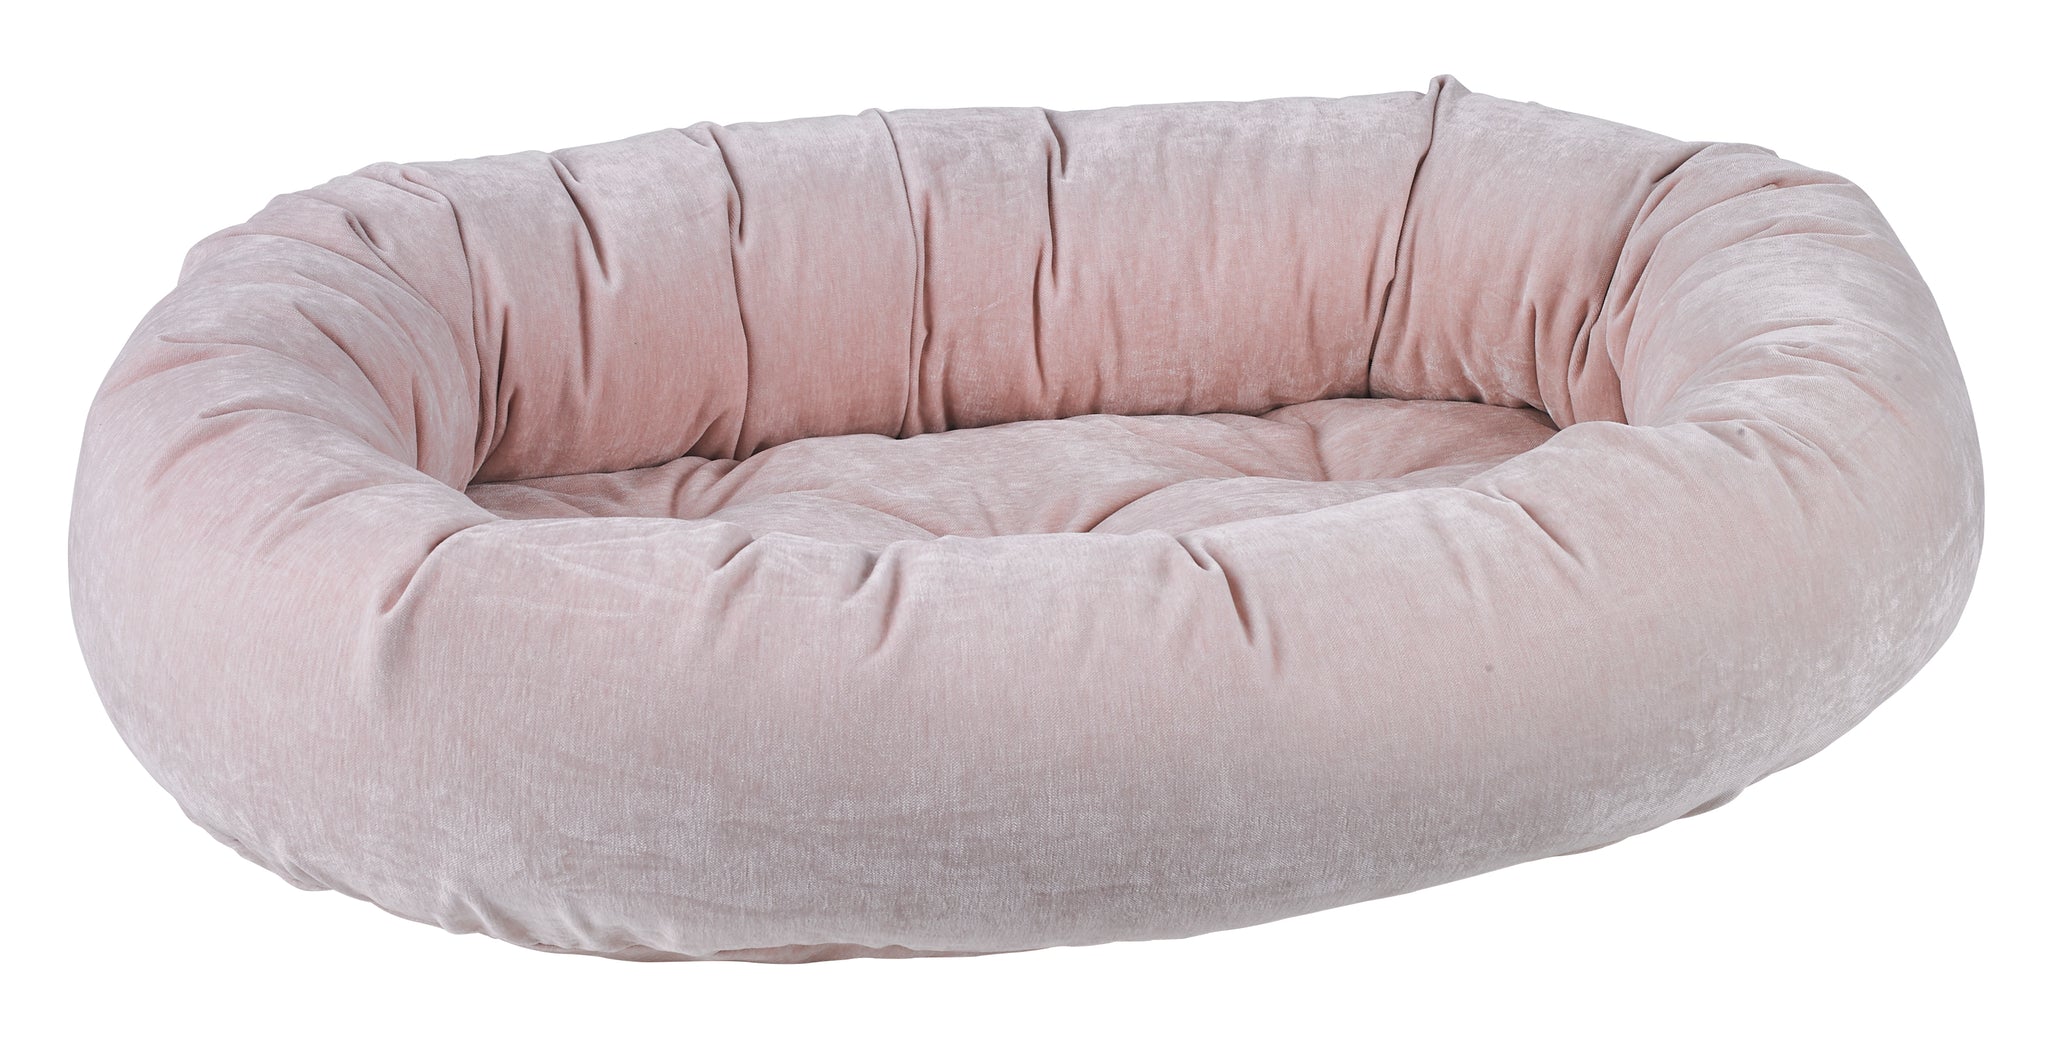 Microvelvet - Donut Bed - Blush - Dog Bed